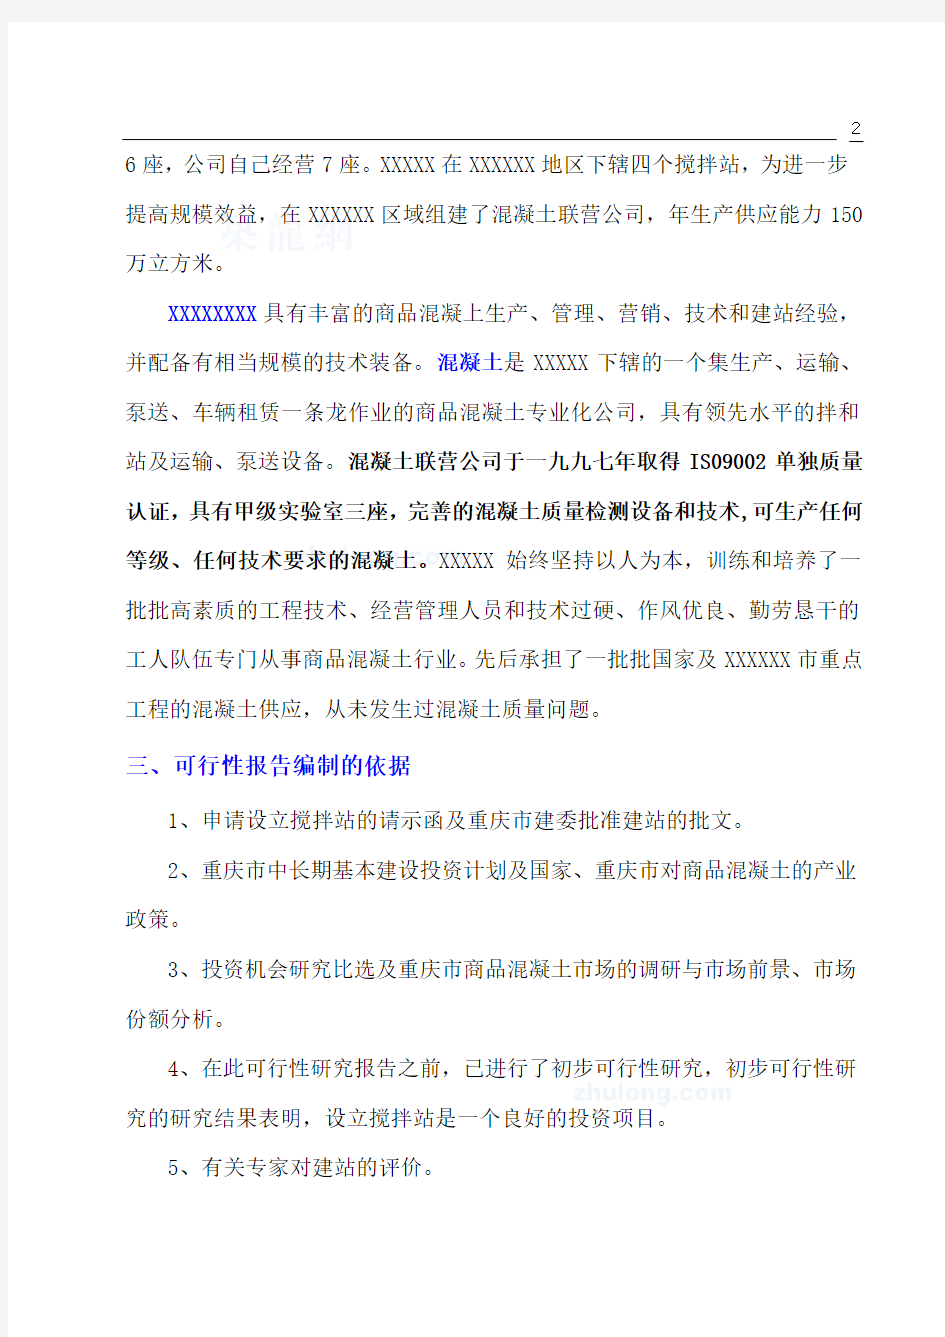 重庆某公司设立混凝土搅拌站可行性报告(正式)_secret